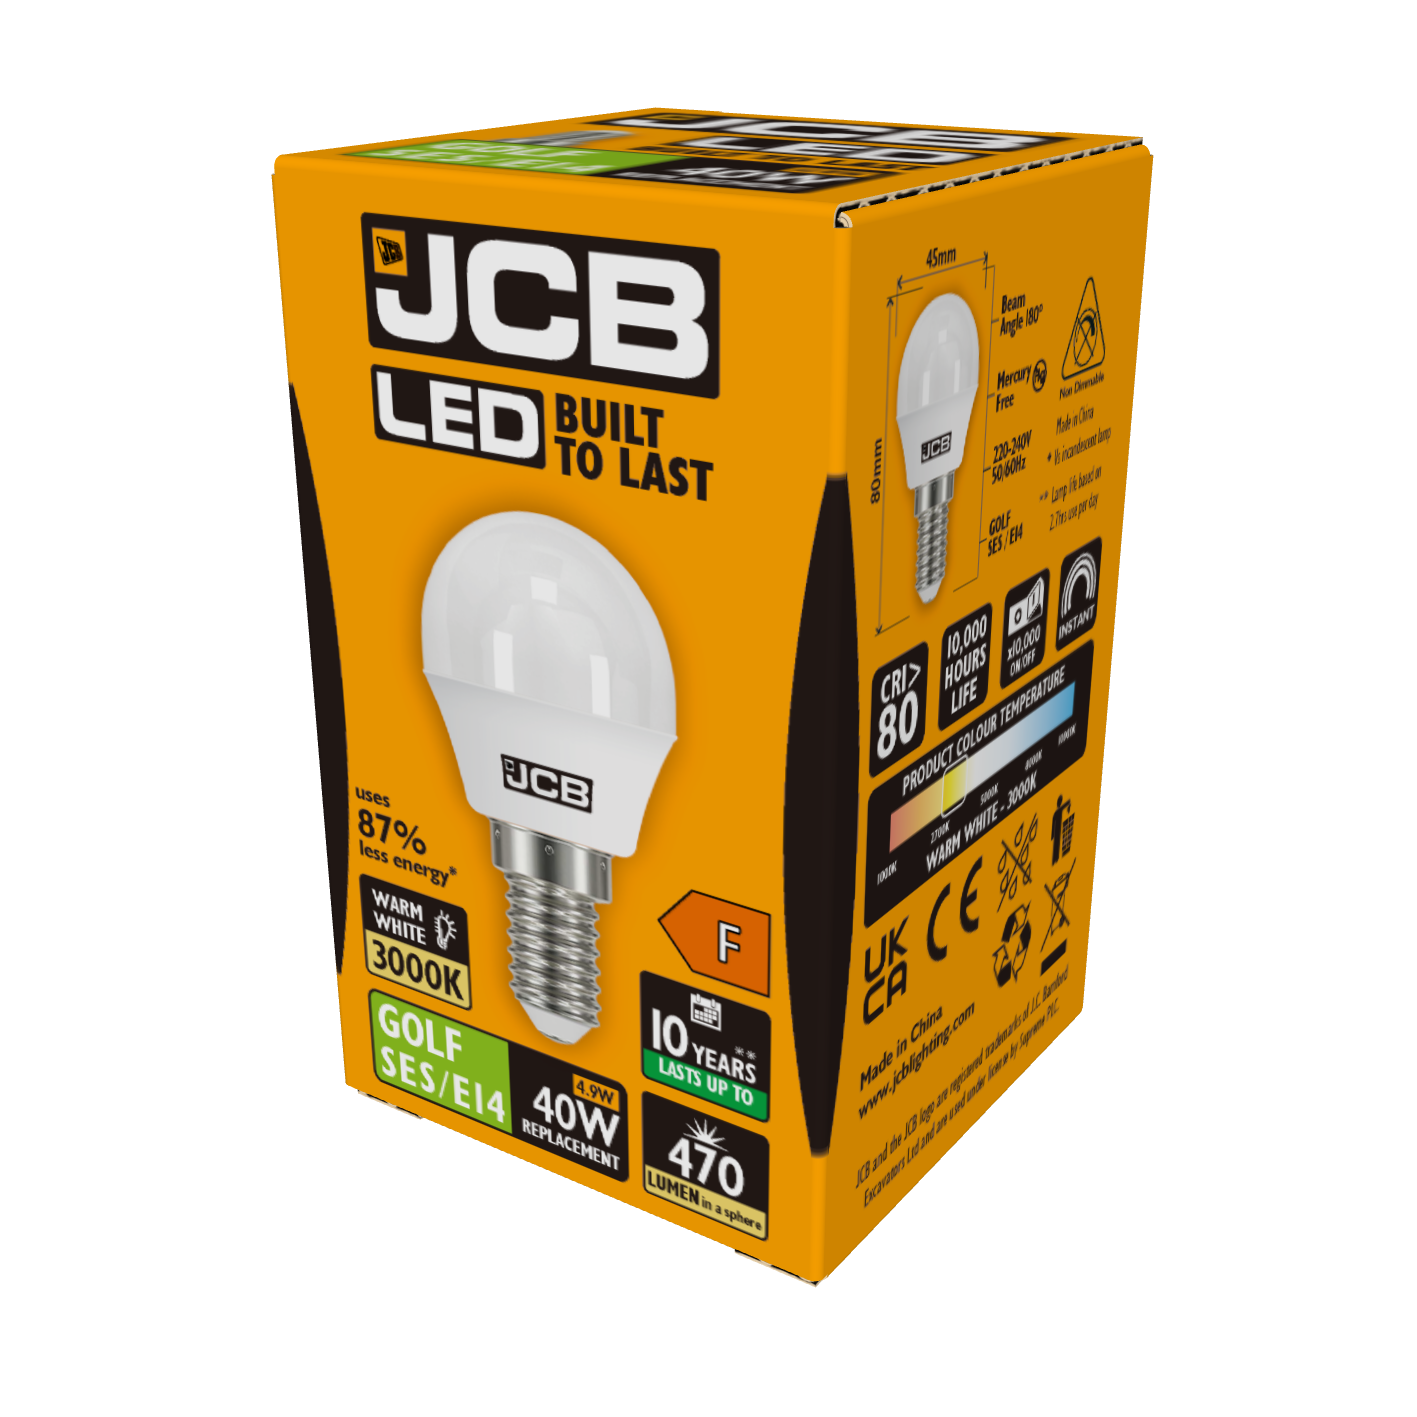 JCB LED Golf E14 (SES) 470lm 4.9W 3,000K (Warm White), Box of 1